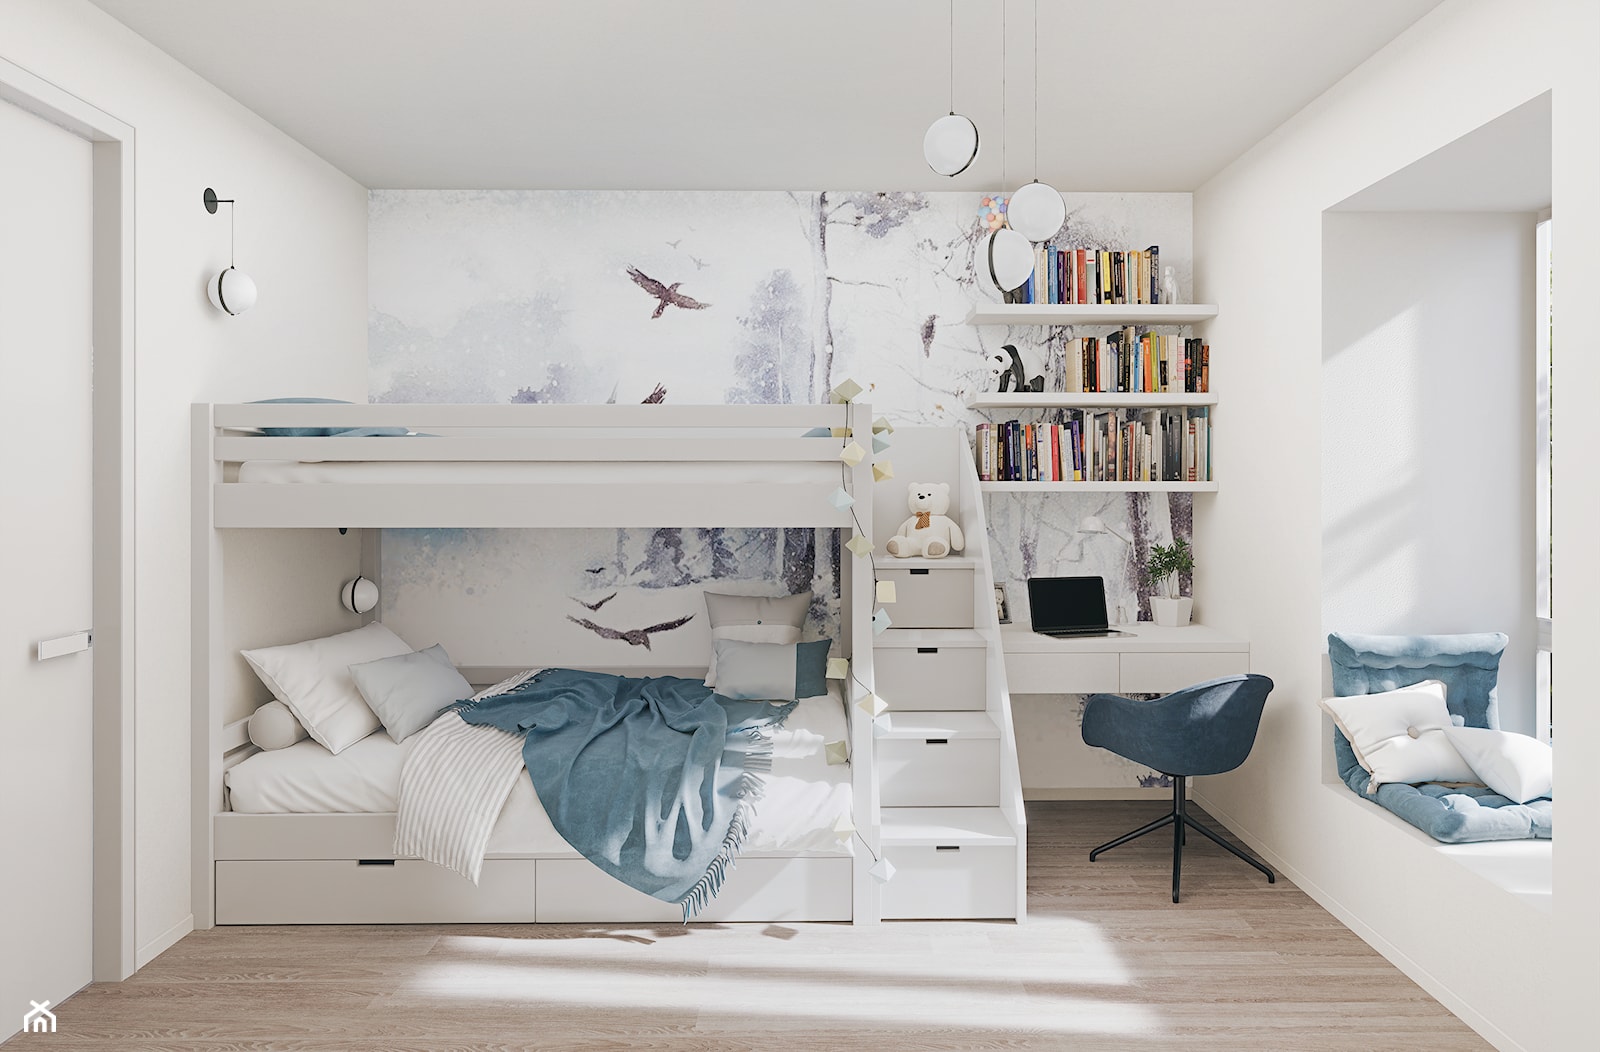 Pokoju dwójki rodzeństwa w biało-błękitnej kolorystyce z łóżkiem piętrowym - zdjęcie od Mizu Design - Homebook